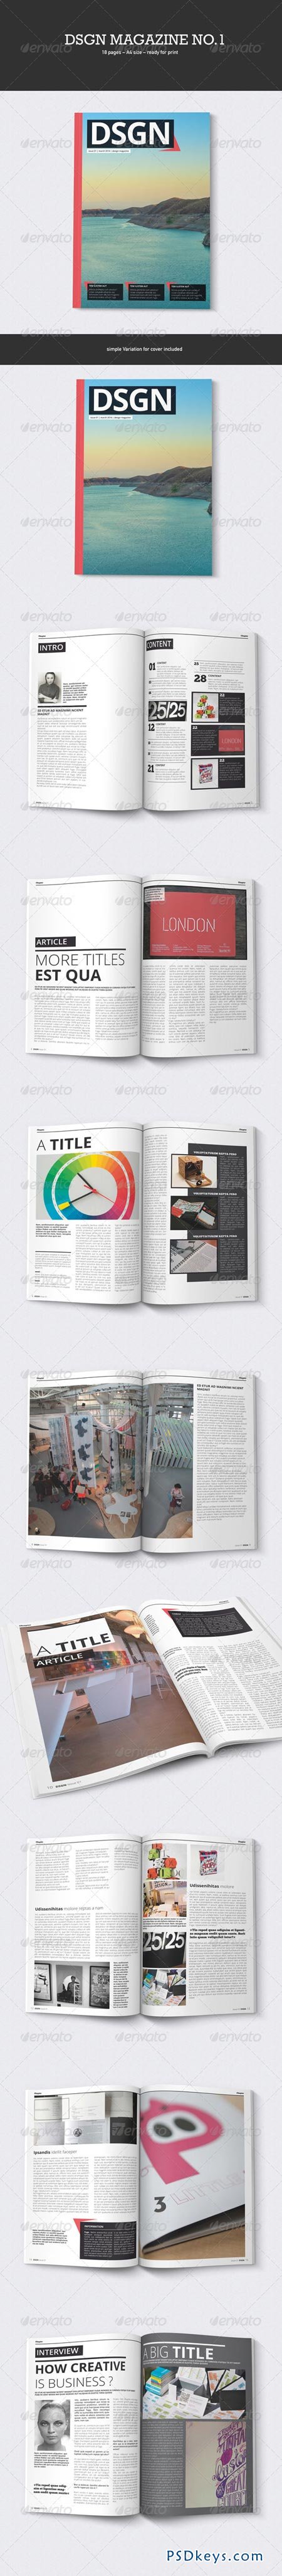 DSGN Design Magazine No.1 6949950